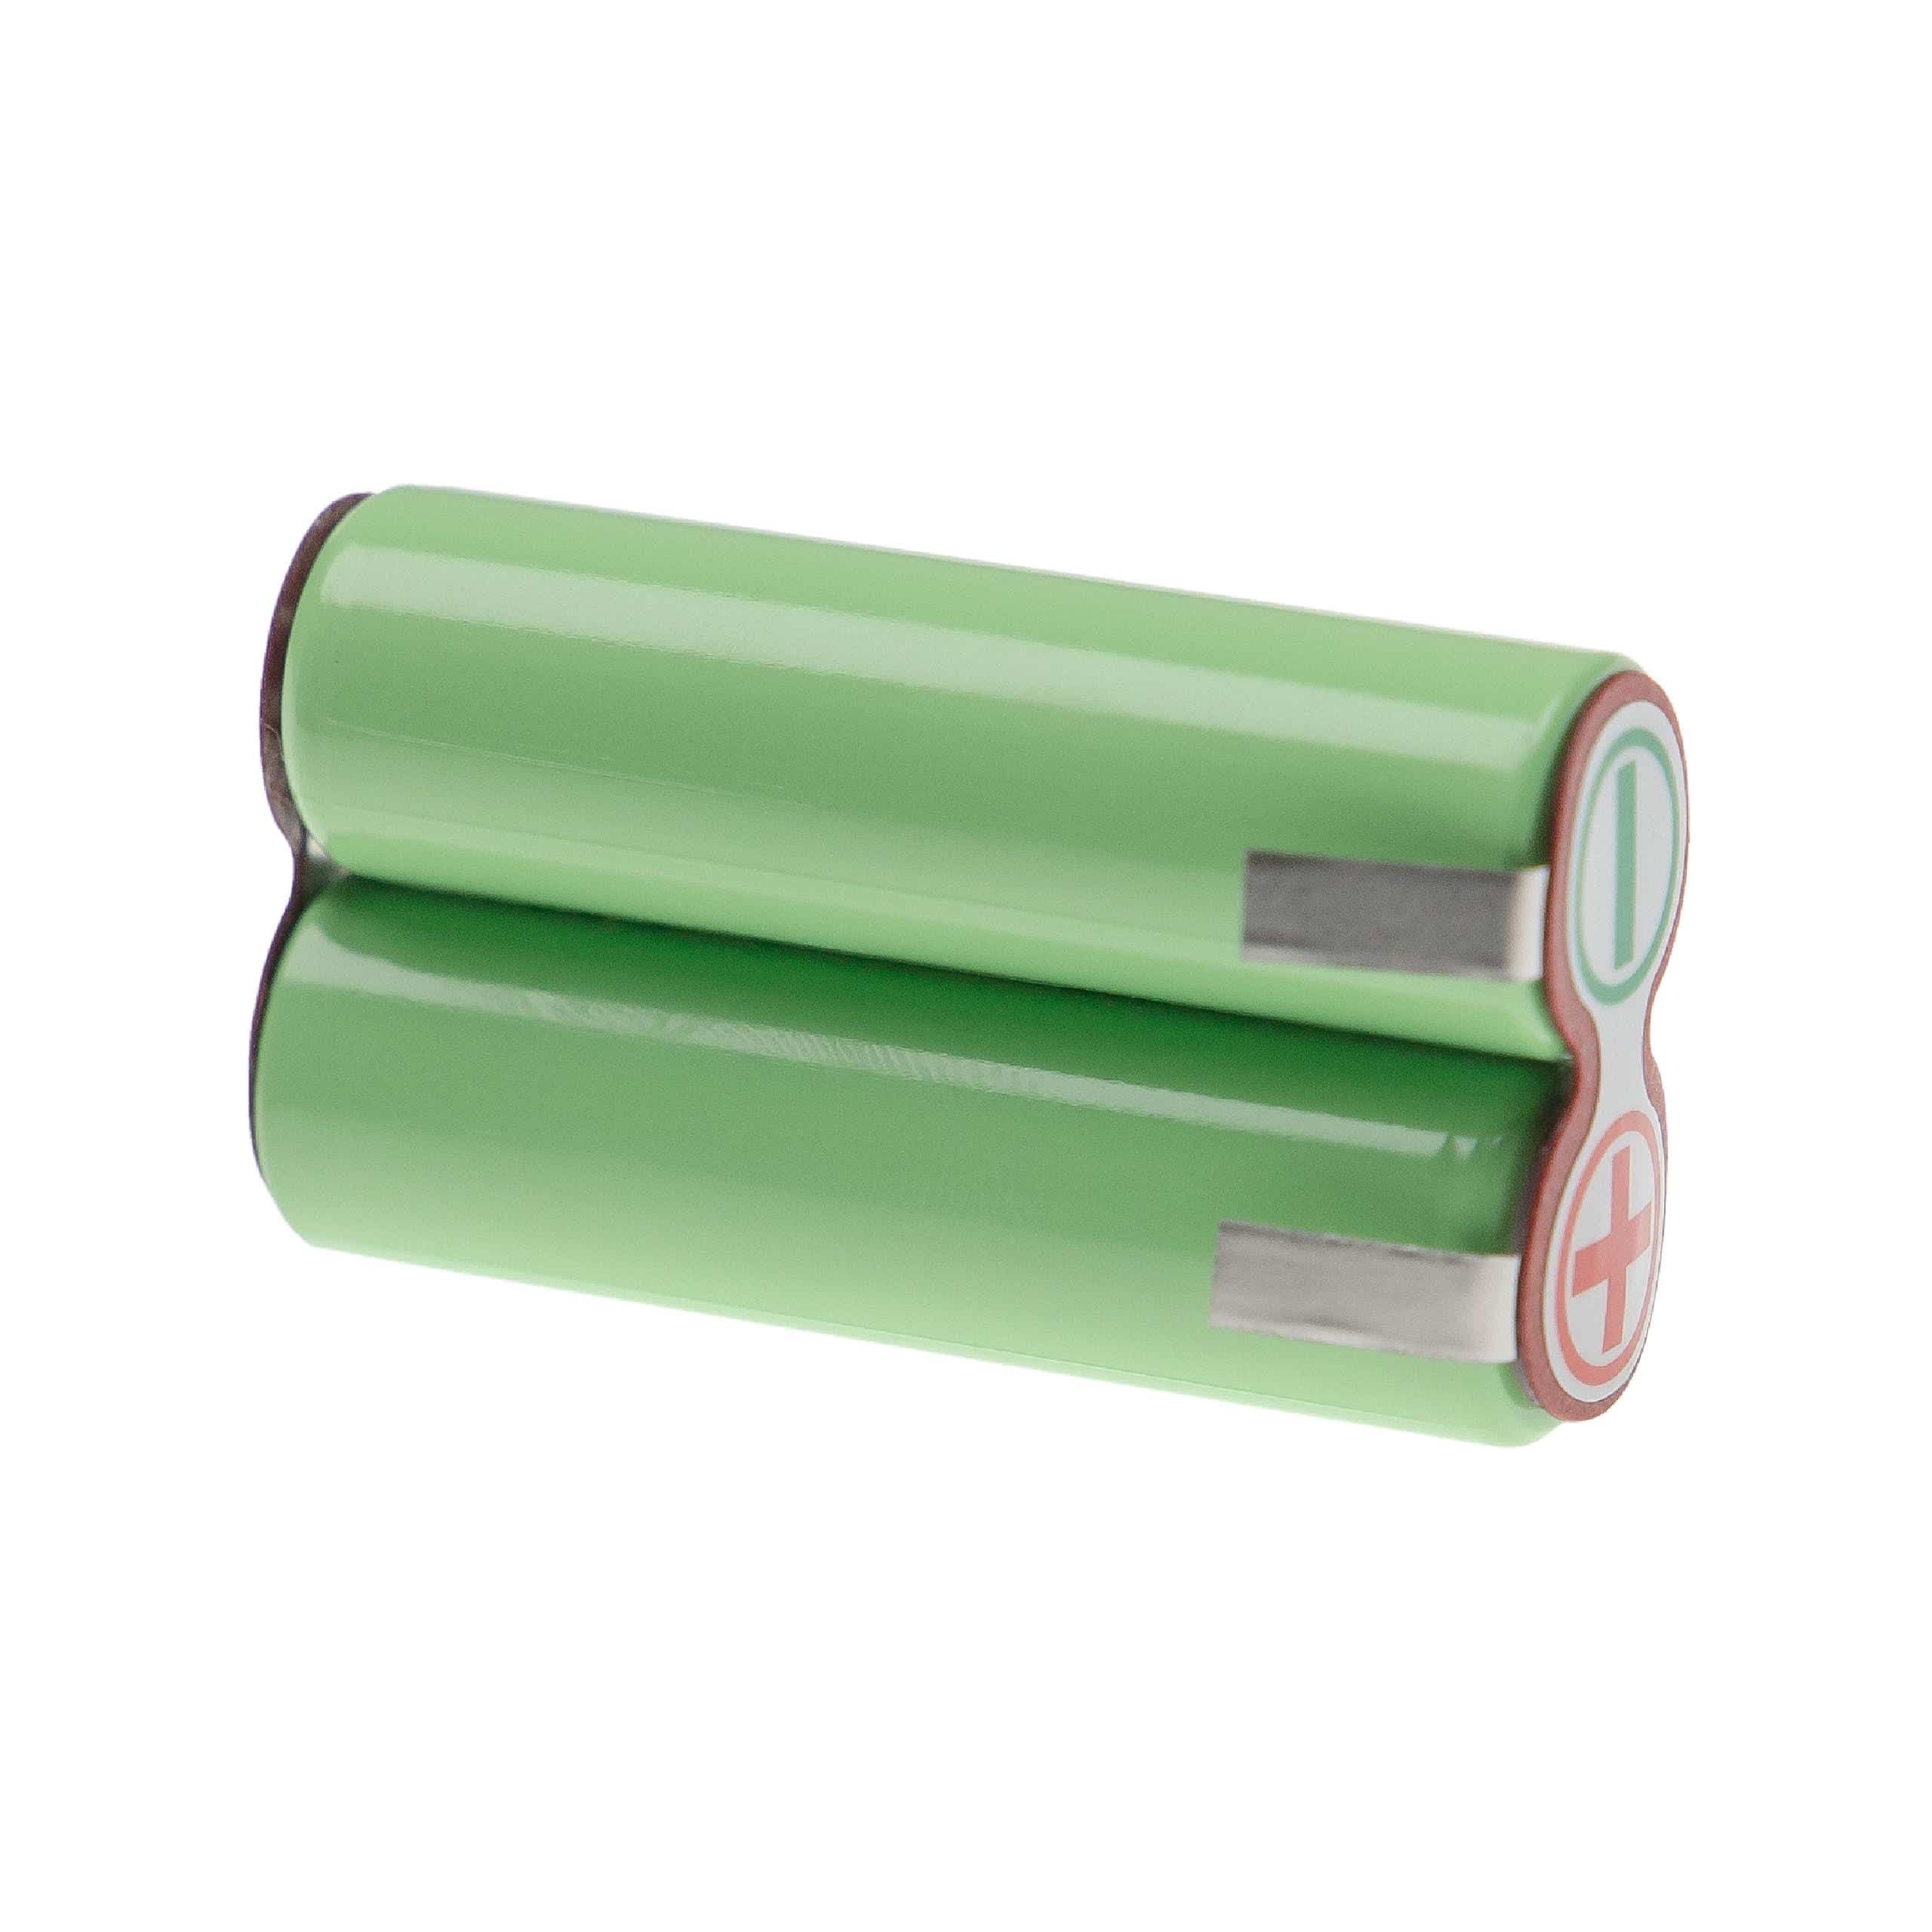 Batterie remplace Panasonic WER150L2507 pour rasoir électrique - 2500mAh 2,4V NiMH